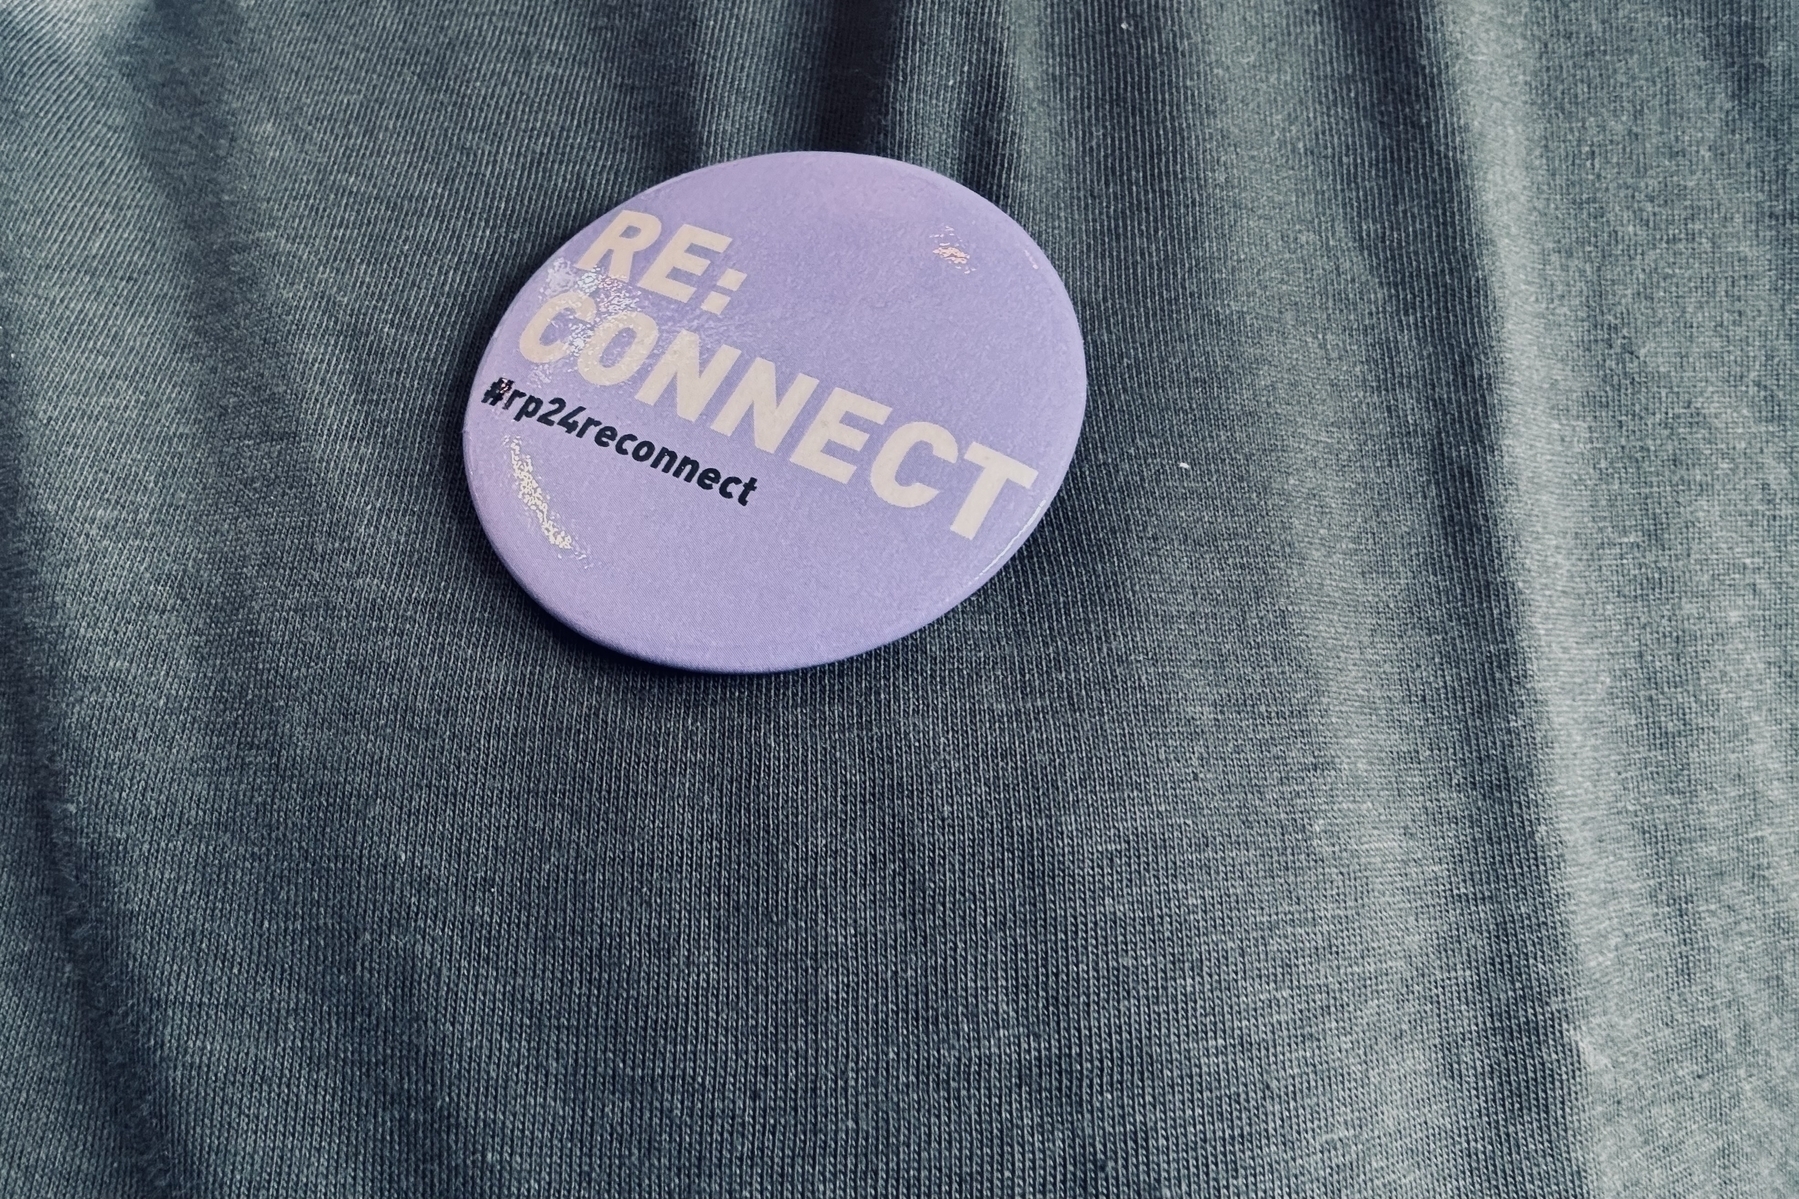 Ein lila kreisförmiger Button mit dem Text "RE:CONNECT #rp24reconnect", der an einen dunklen Stoff gepinnt ist.